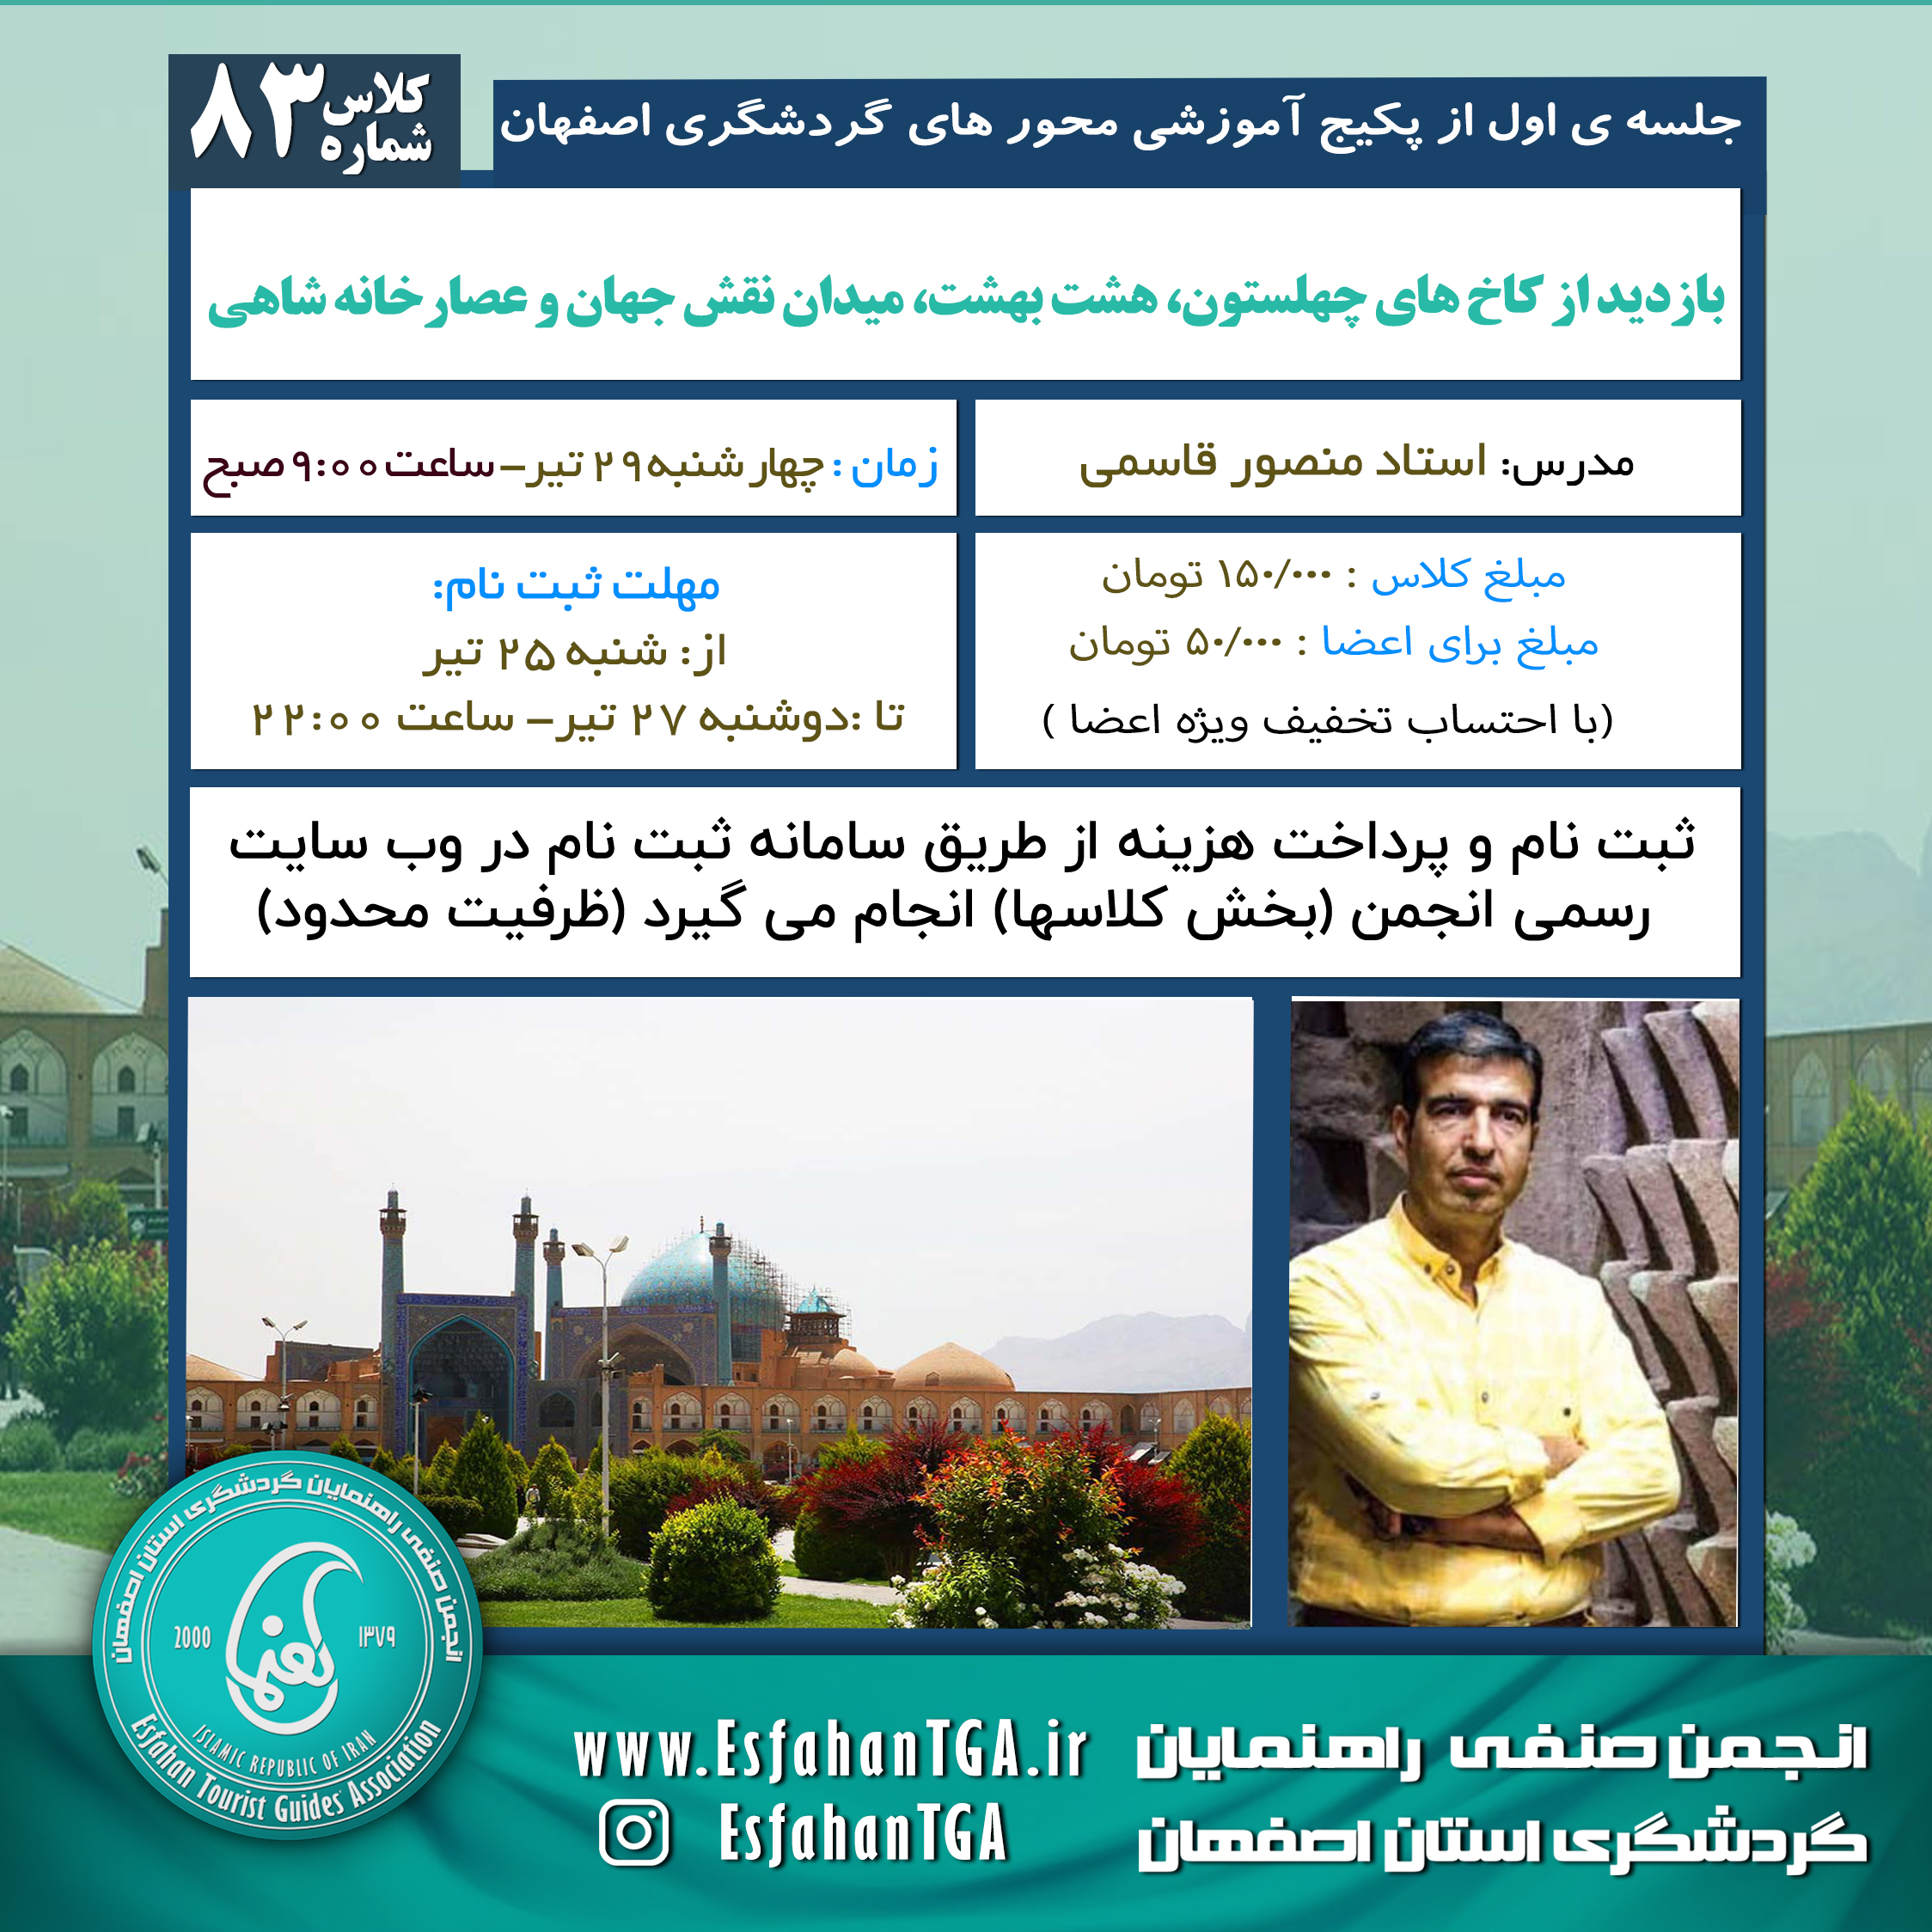 جلسه اول پکیج آموزشی محورهای گردشگری اصفهان